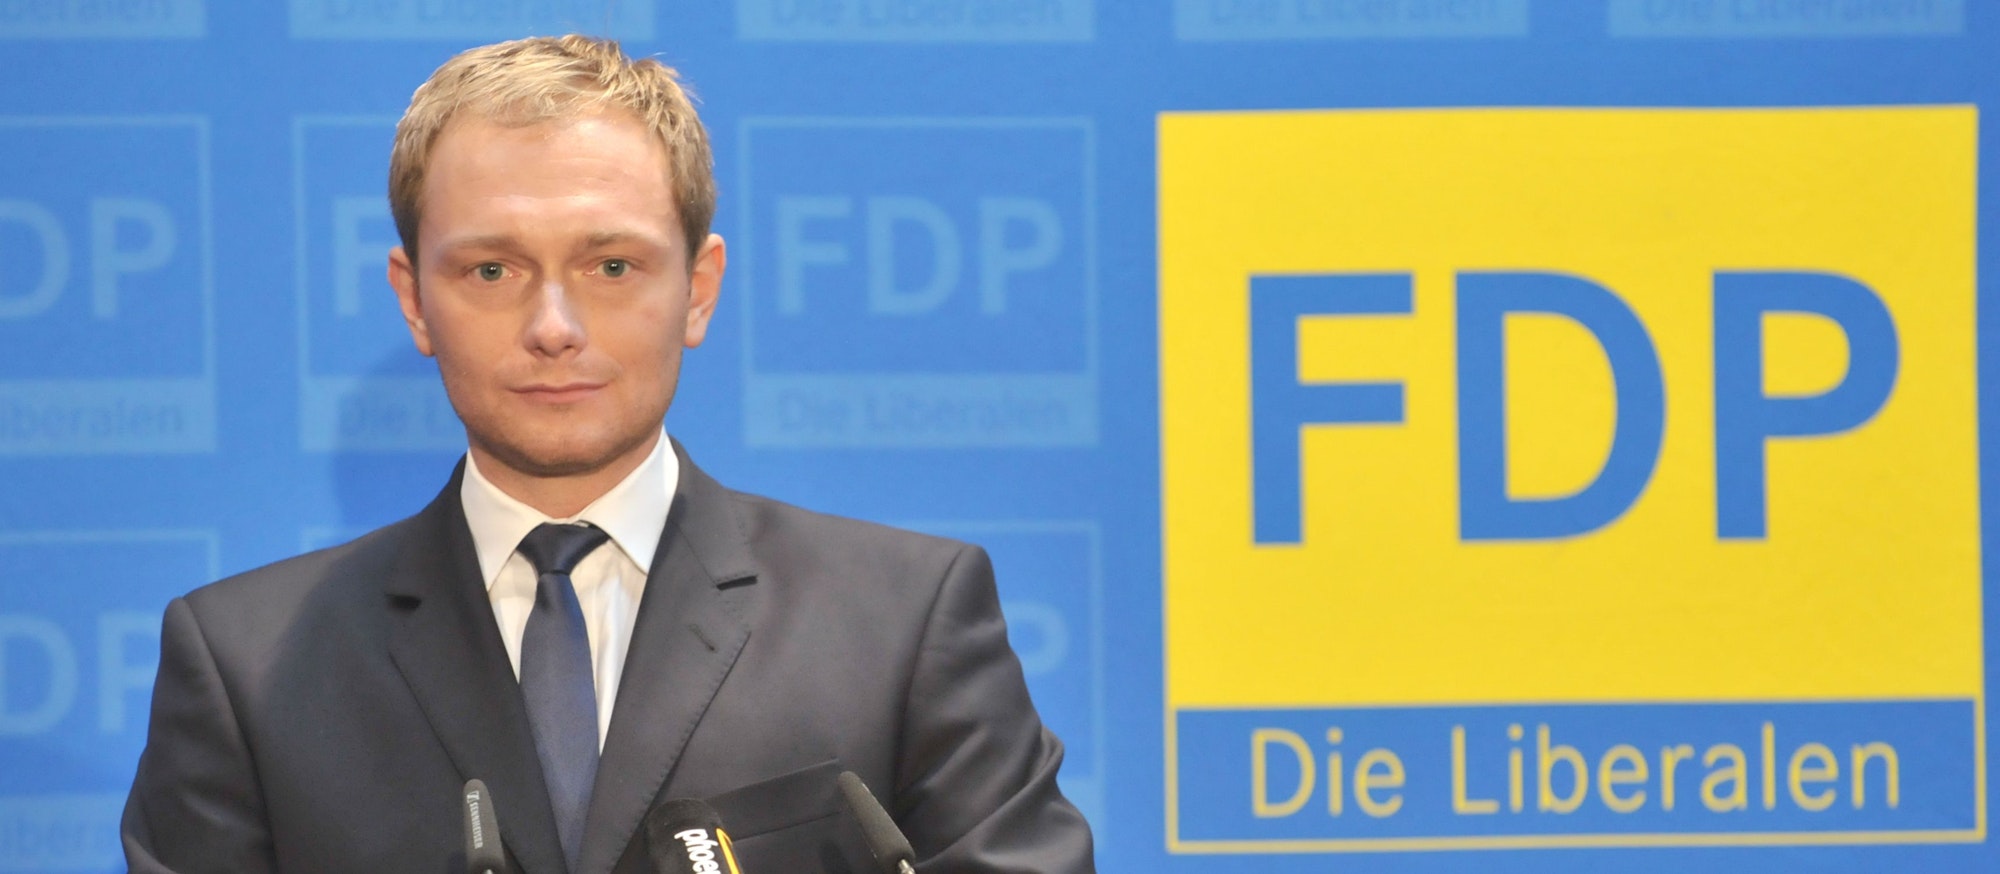 Christian Lindner nach seiner Wahl zum Generalsekretär der FDP 2010 in Berlin.